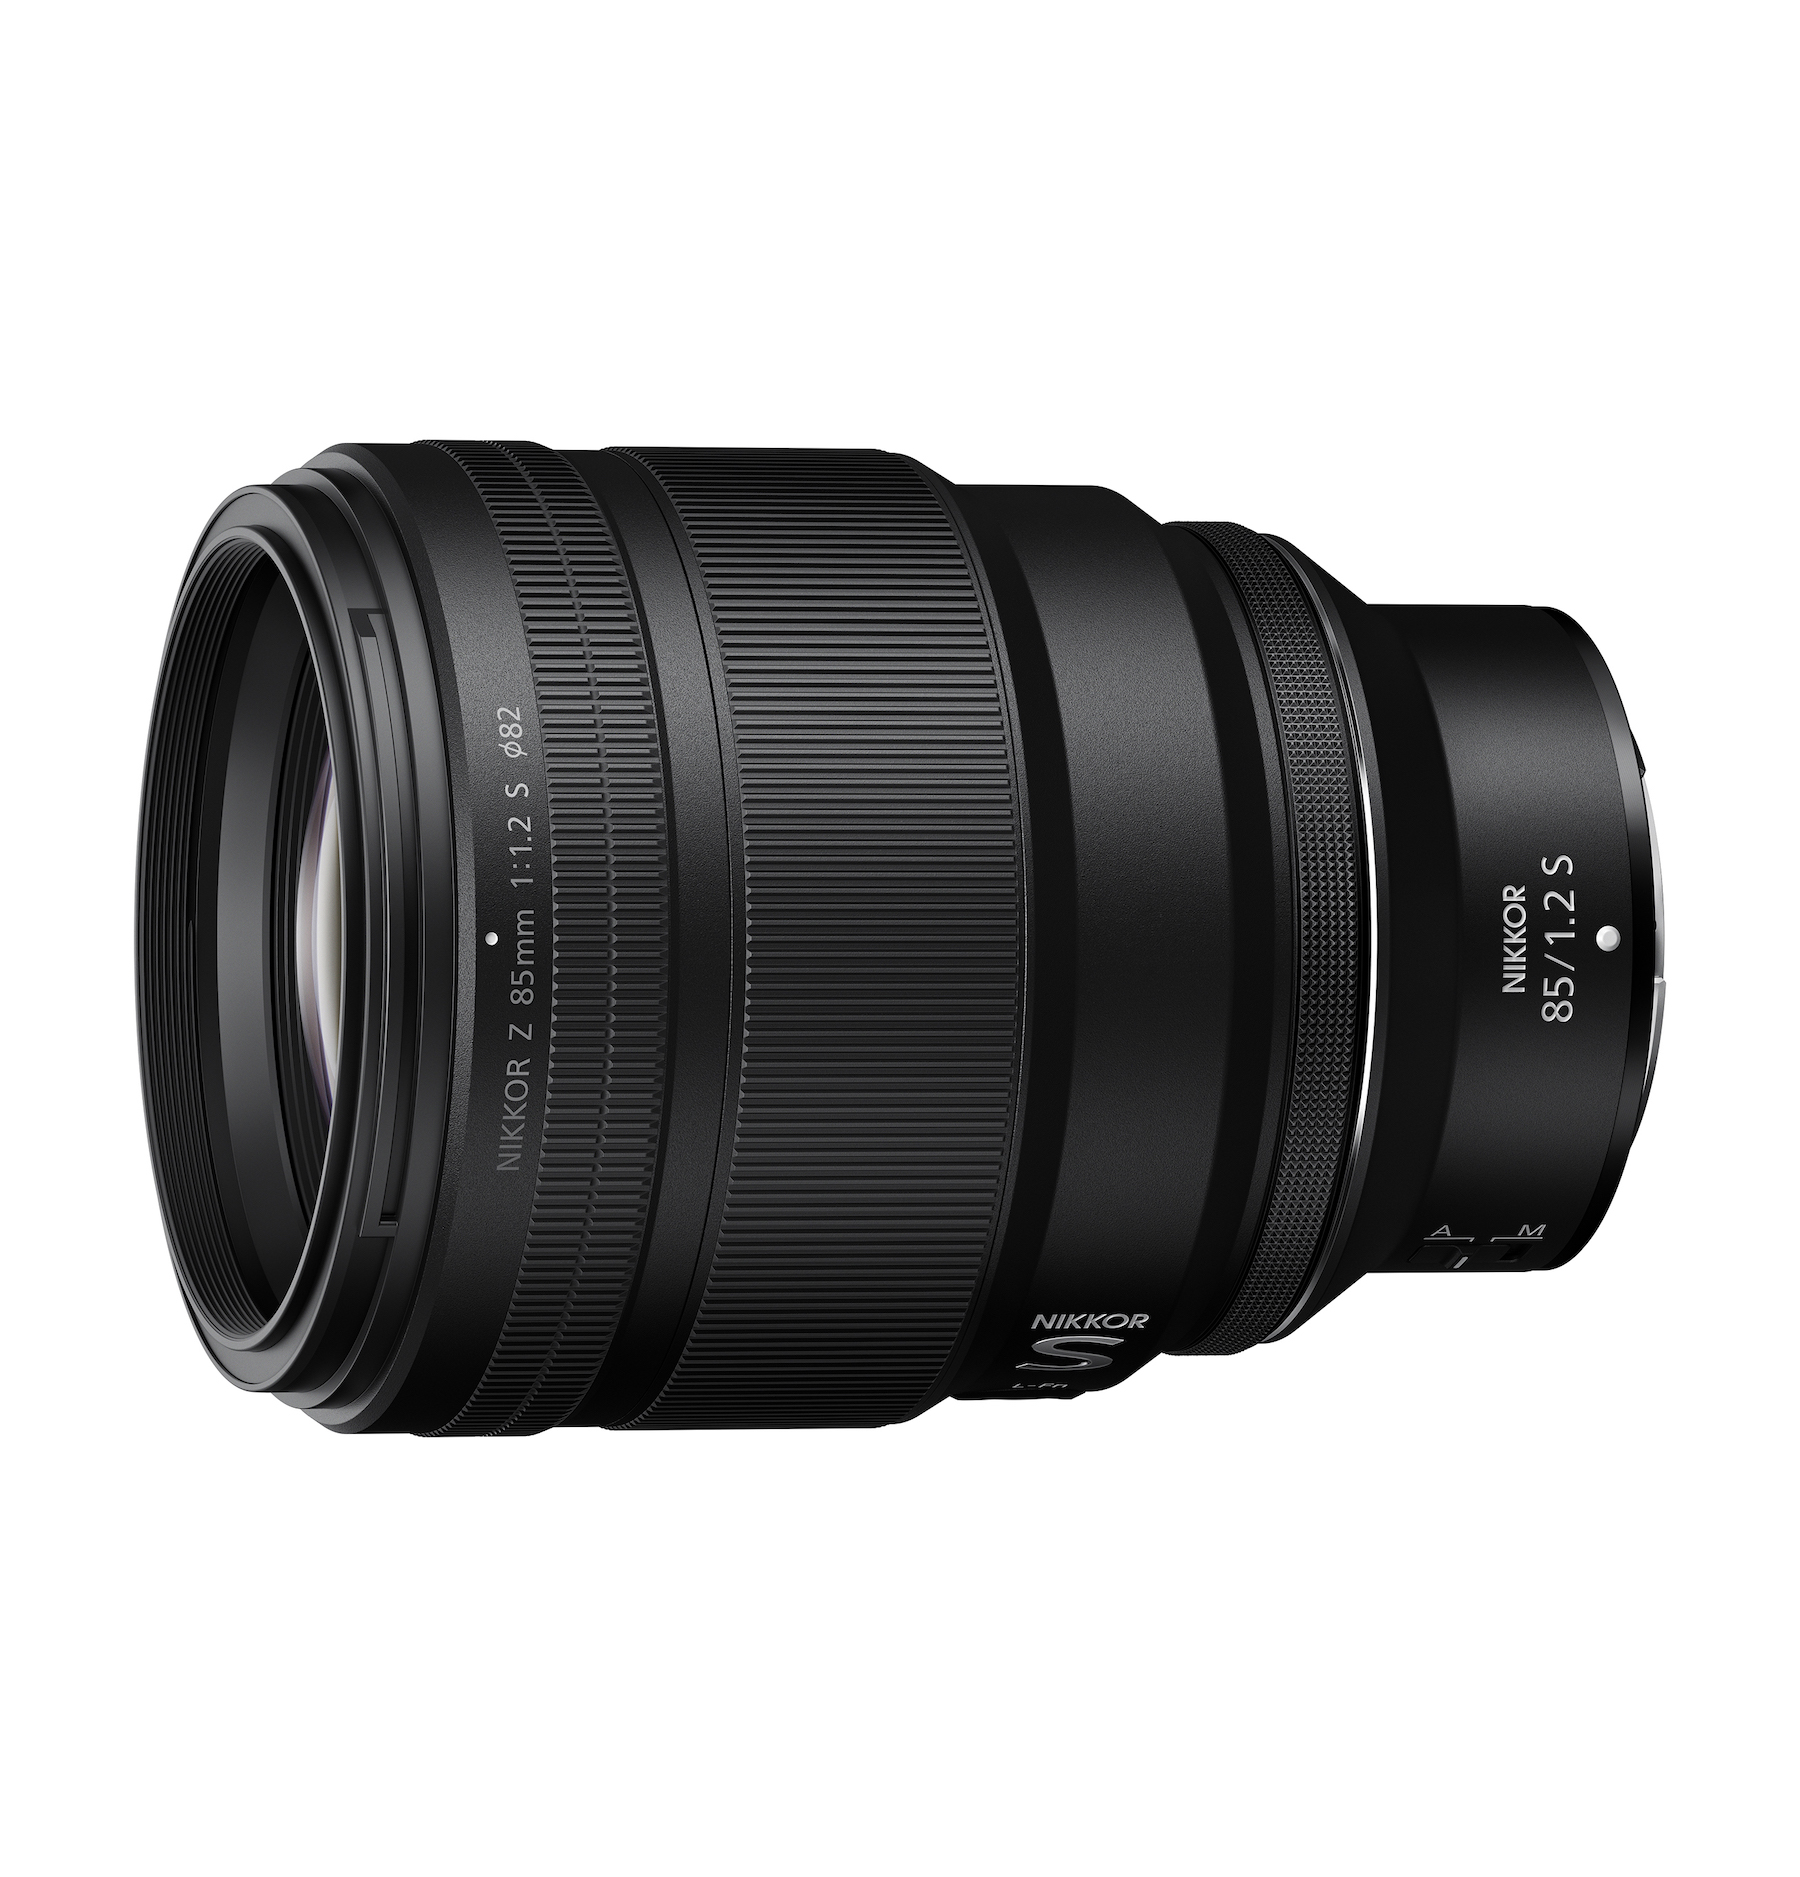 Nikon công bố phát triển hai ống kính 26mm F2.8 và 85mm F1.2 dòng S mới cho ngàm Z